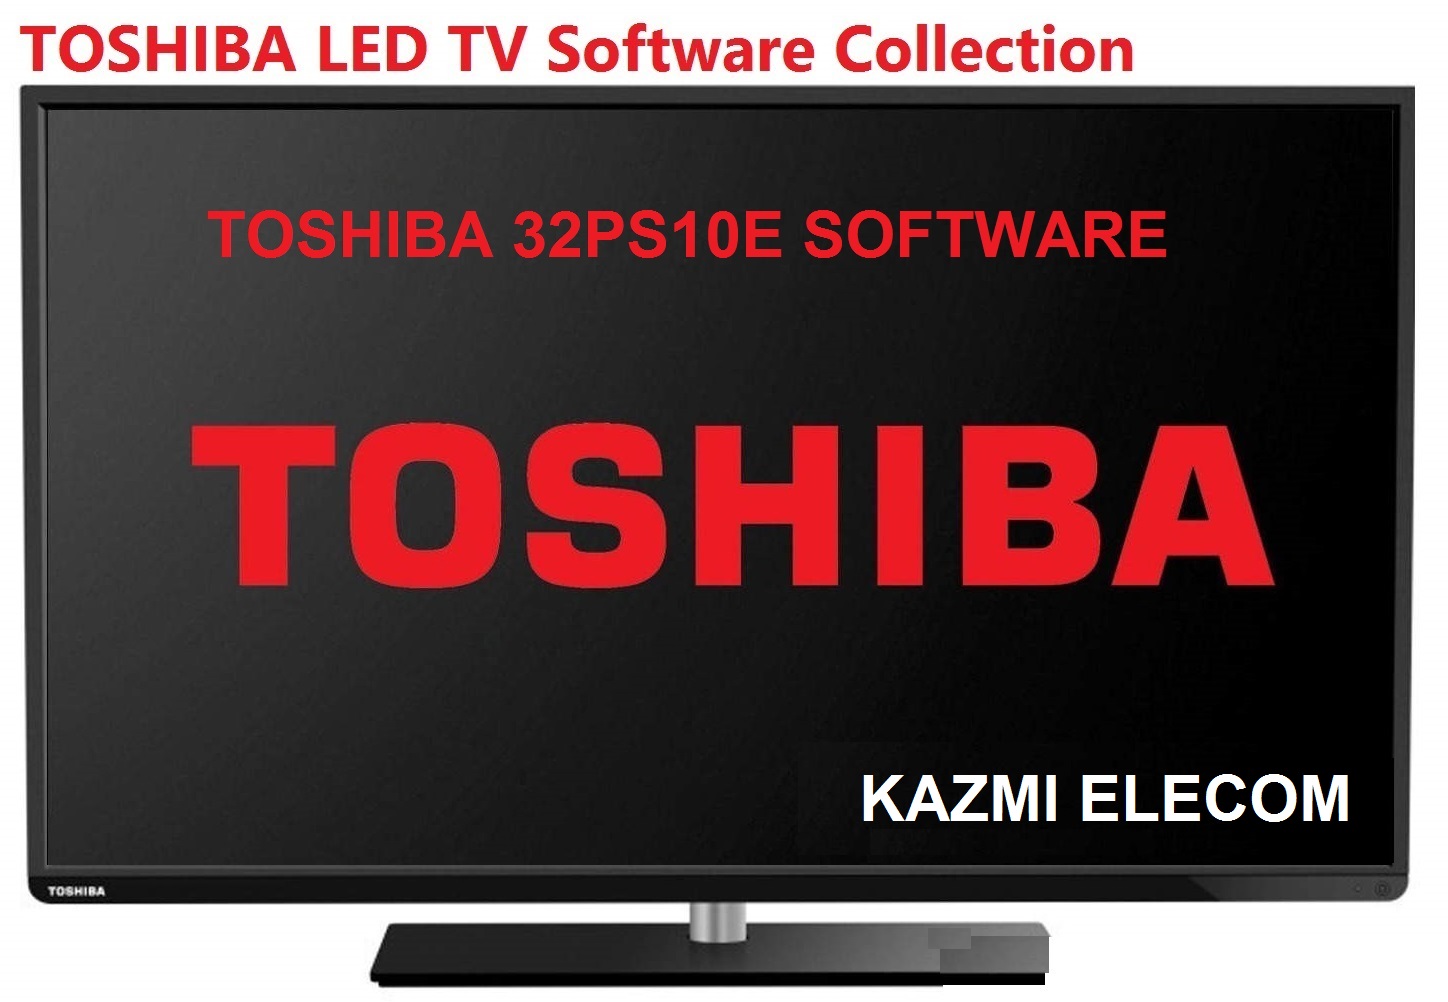 Toshiba 32Ps10E